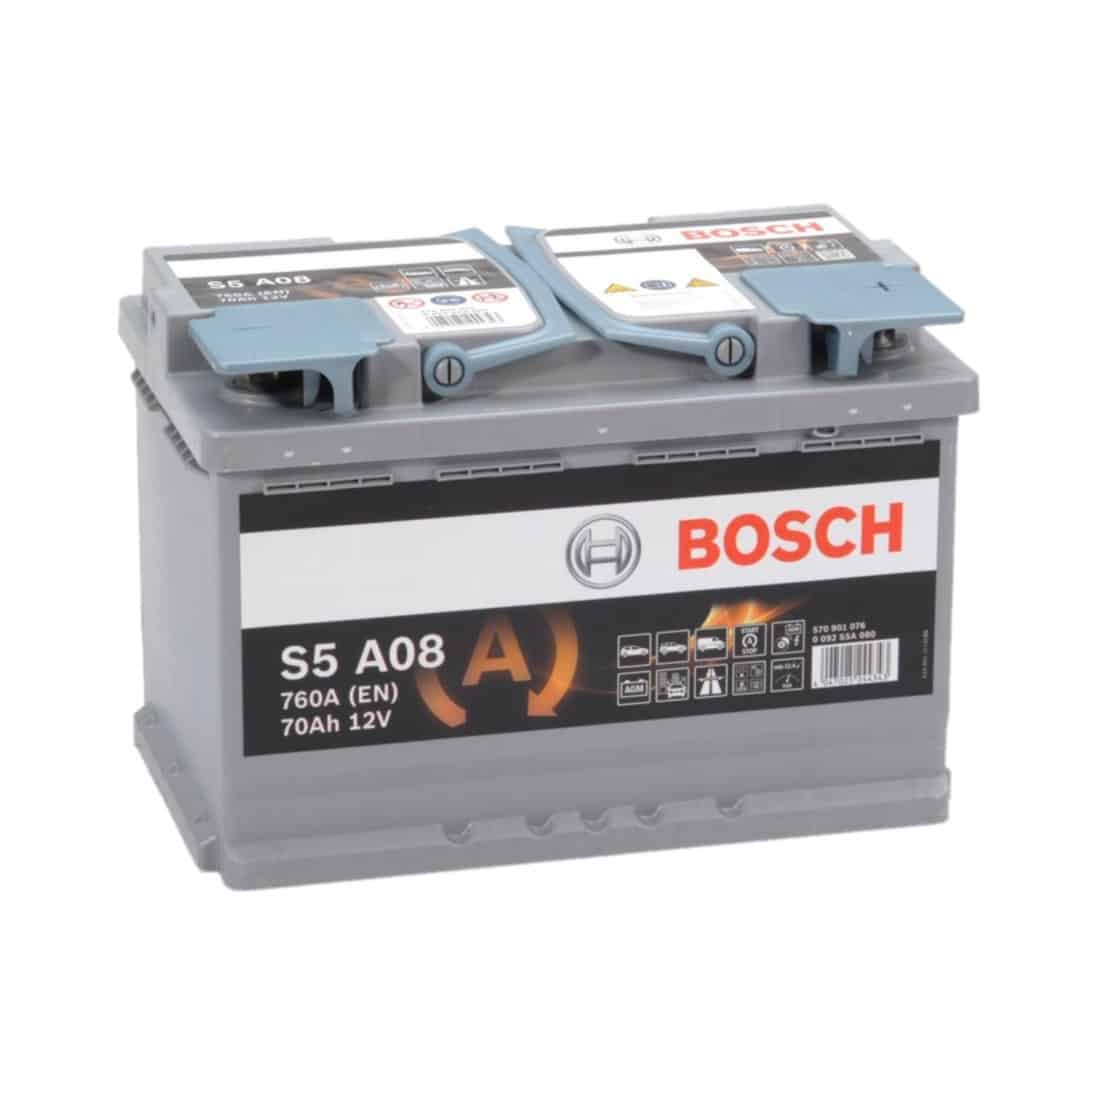 Evolueren Bijdrage Beheren Bosch S5A08 - 70Ah accu, 760A, 12V (0 092 S5A 080) - Accudeal